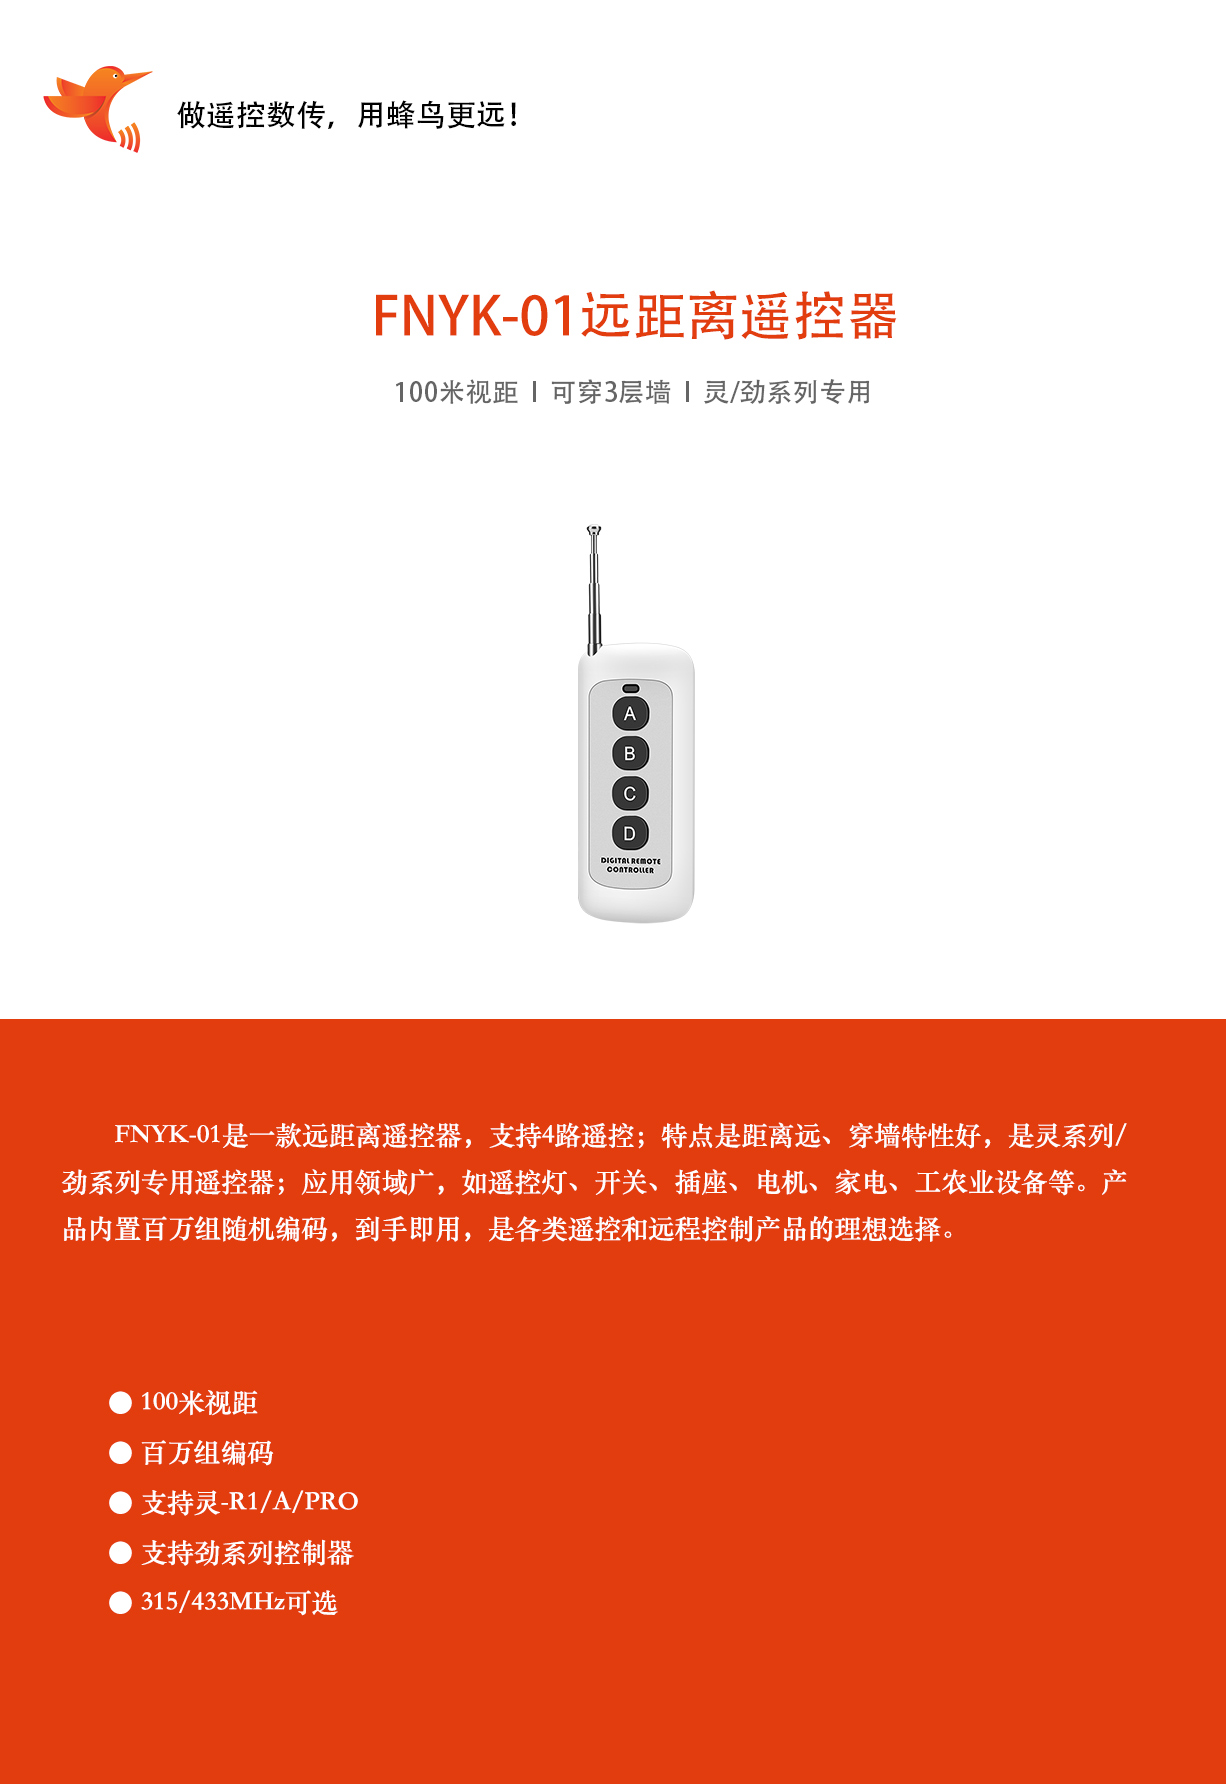 FNYK-01新详情1226--220725_01.jpg